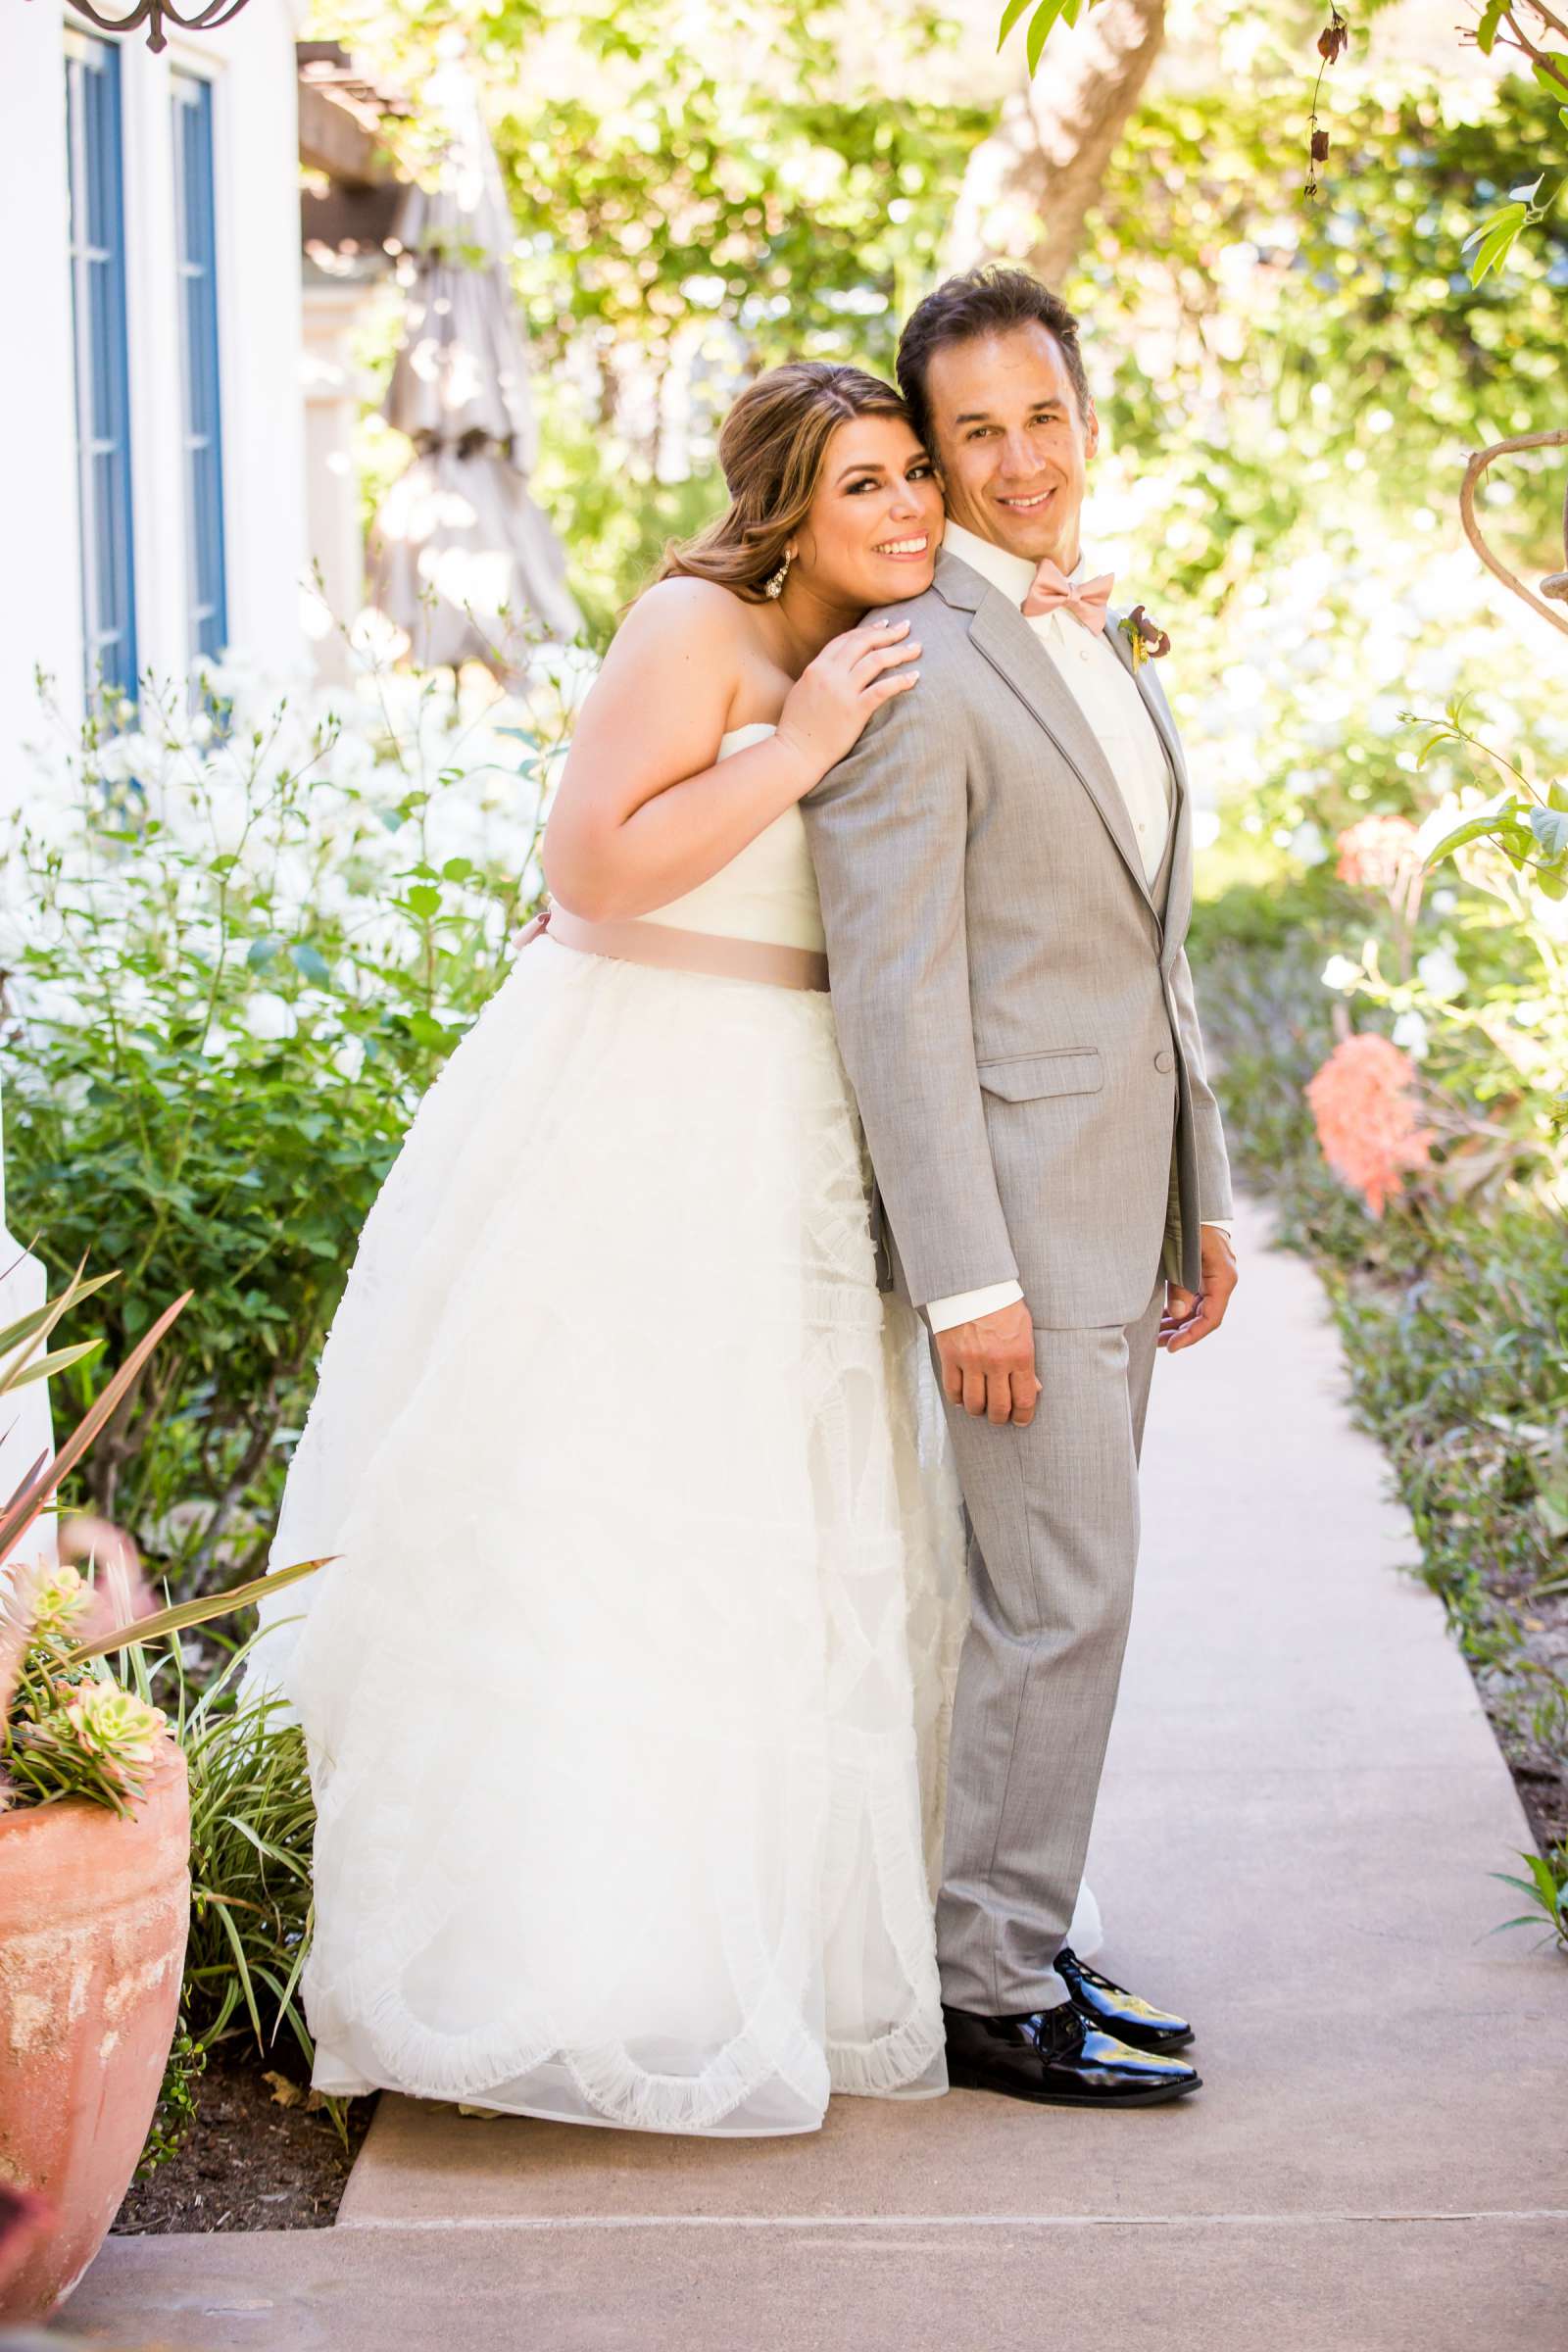 Rancho Santa Fe Golf Club Wedding coordinated by Monarch Weddings, Carolynn and Jon Wedding Photo #29 by True Photography